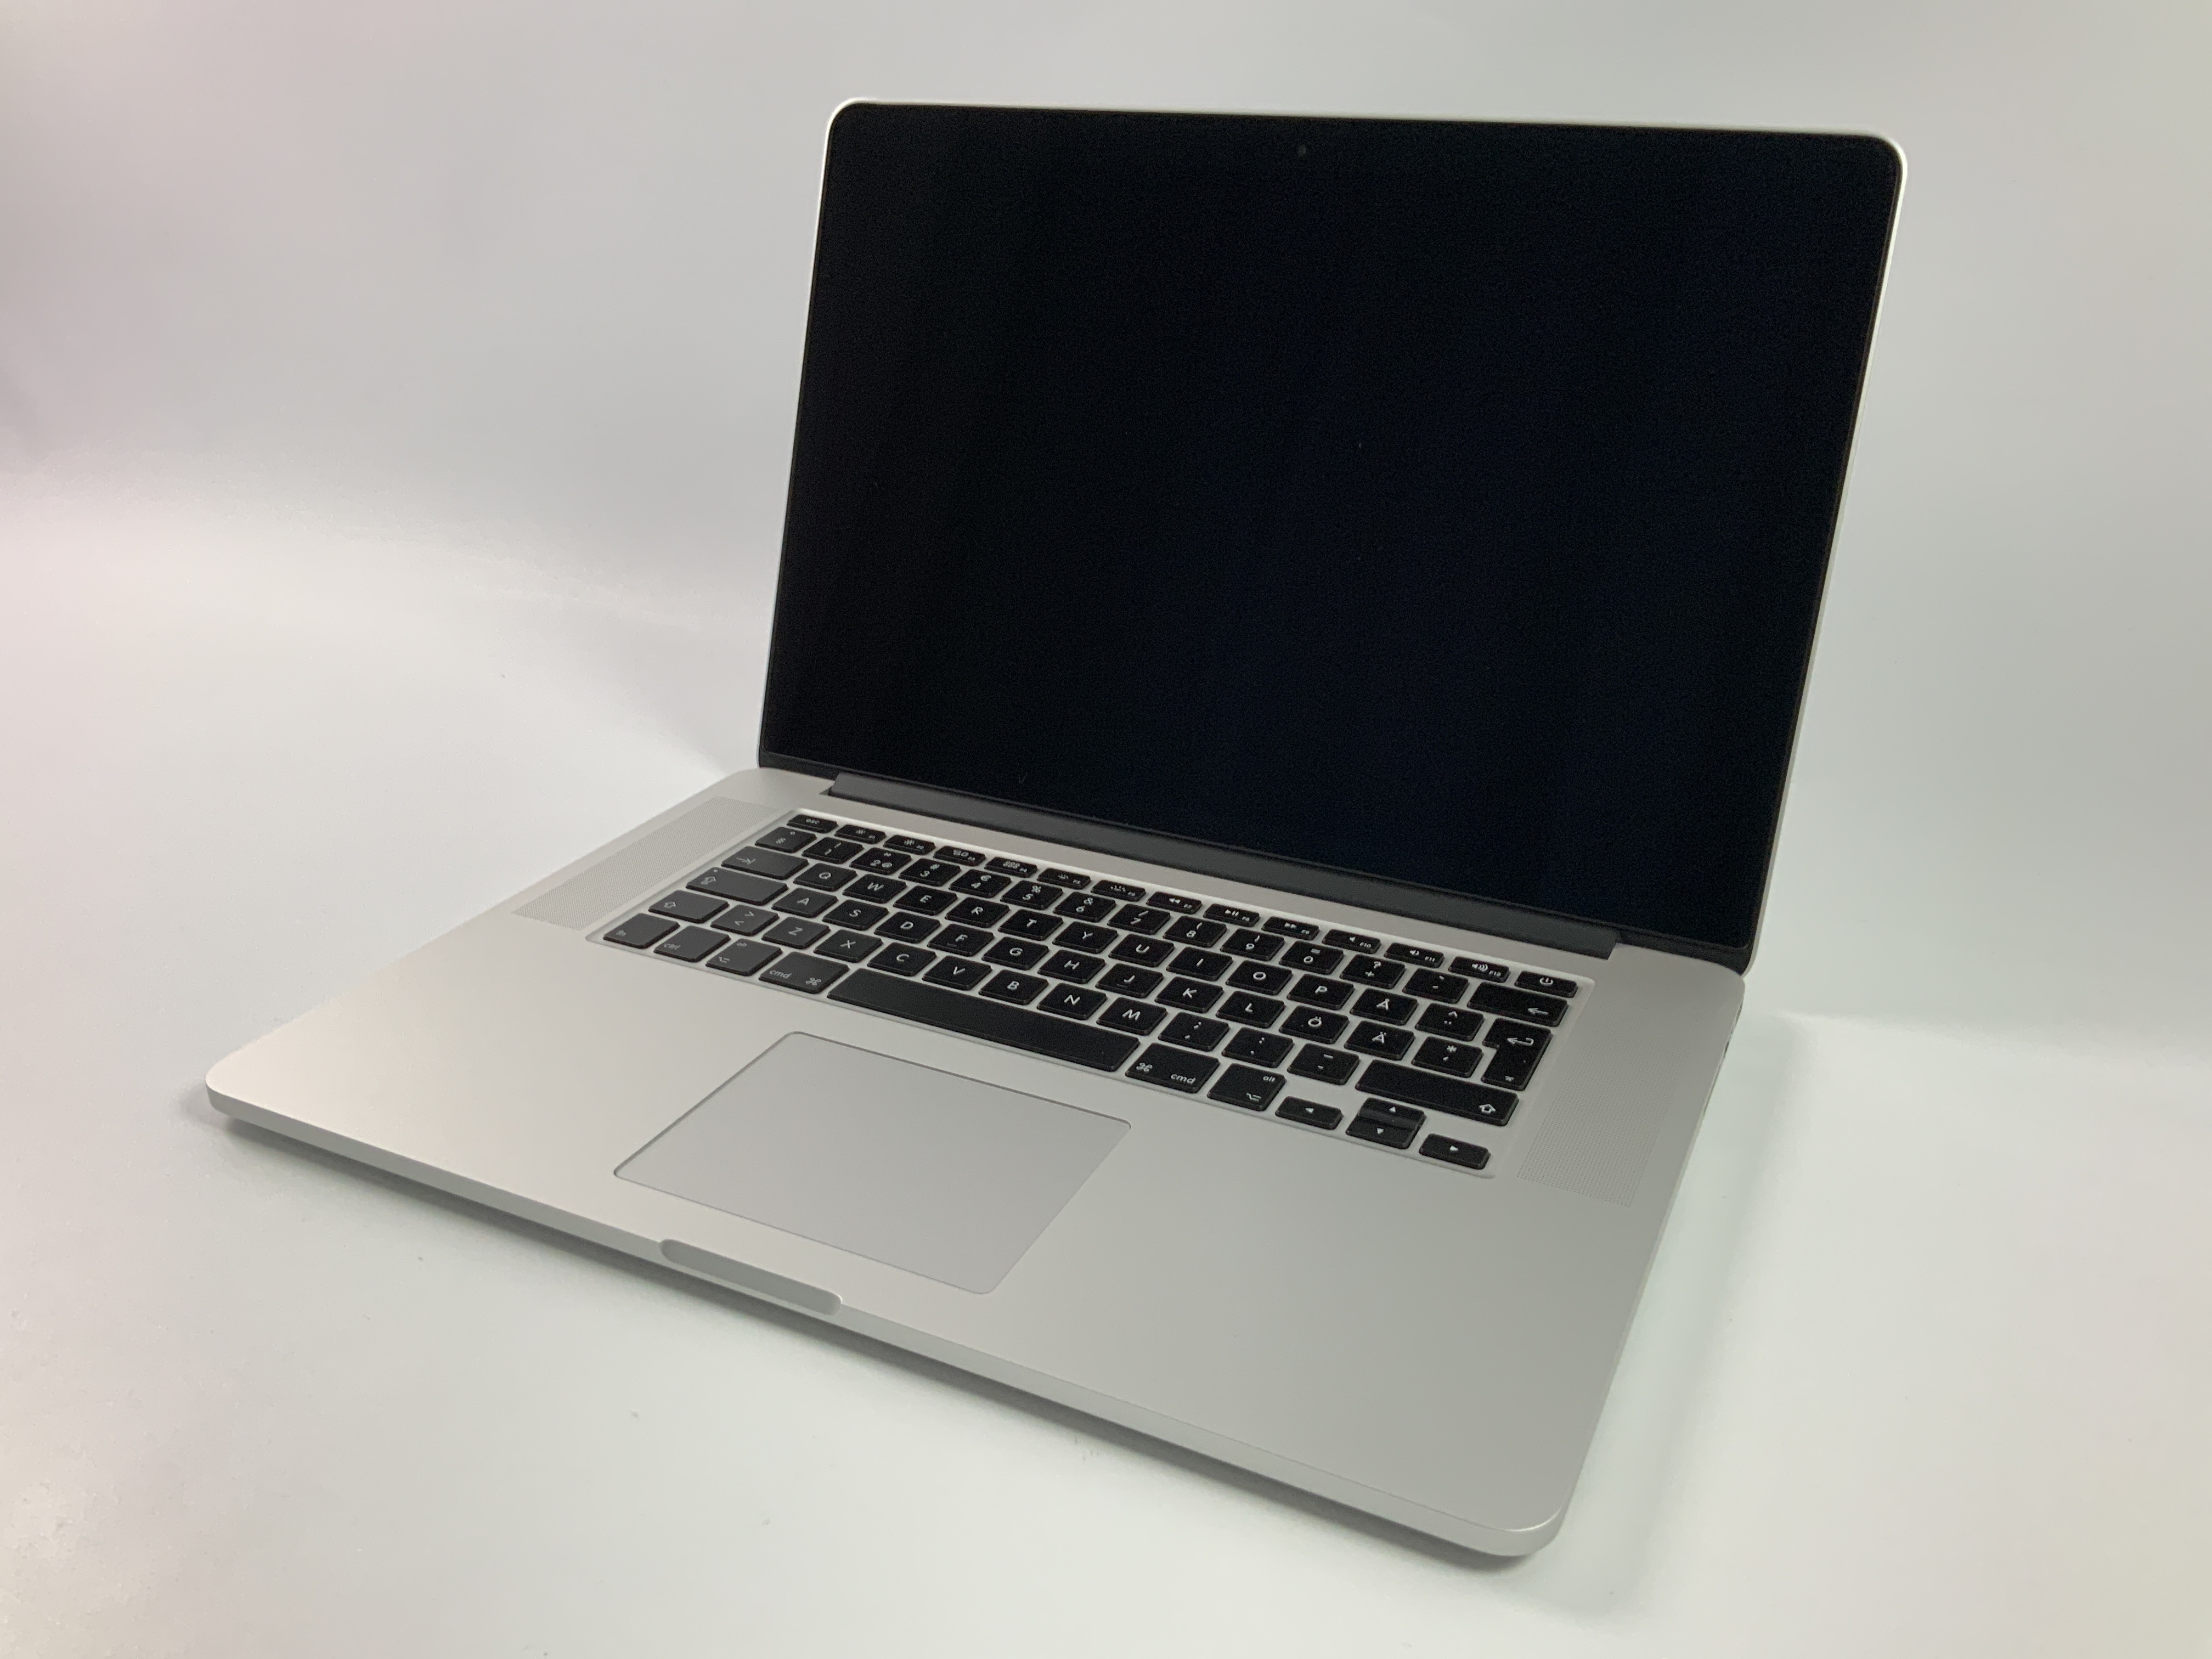 MacBook Pro Retina 15" Mid 2015 (Intel Quad-Core i7 2.2 GHz 16 GB RAM 256 GB SSD), Intel Quad-Core i7 2.2 GHz, 16 GB RAM, 256 GB SSD, bild 1